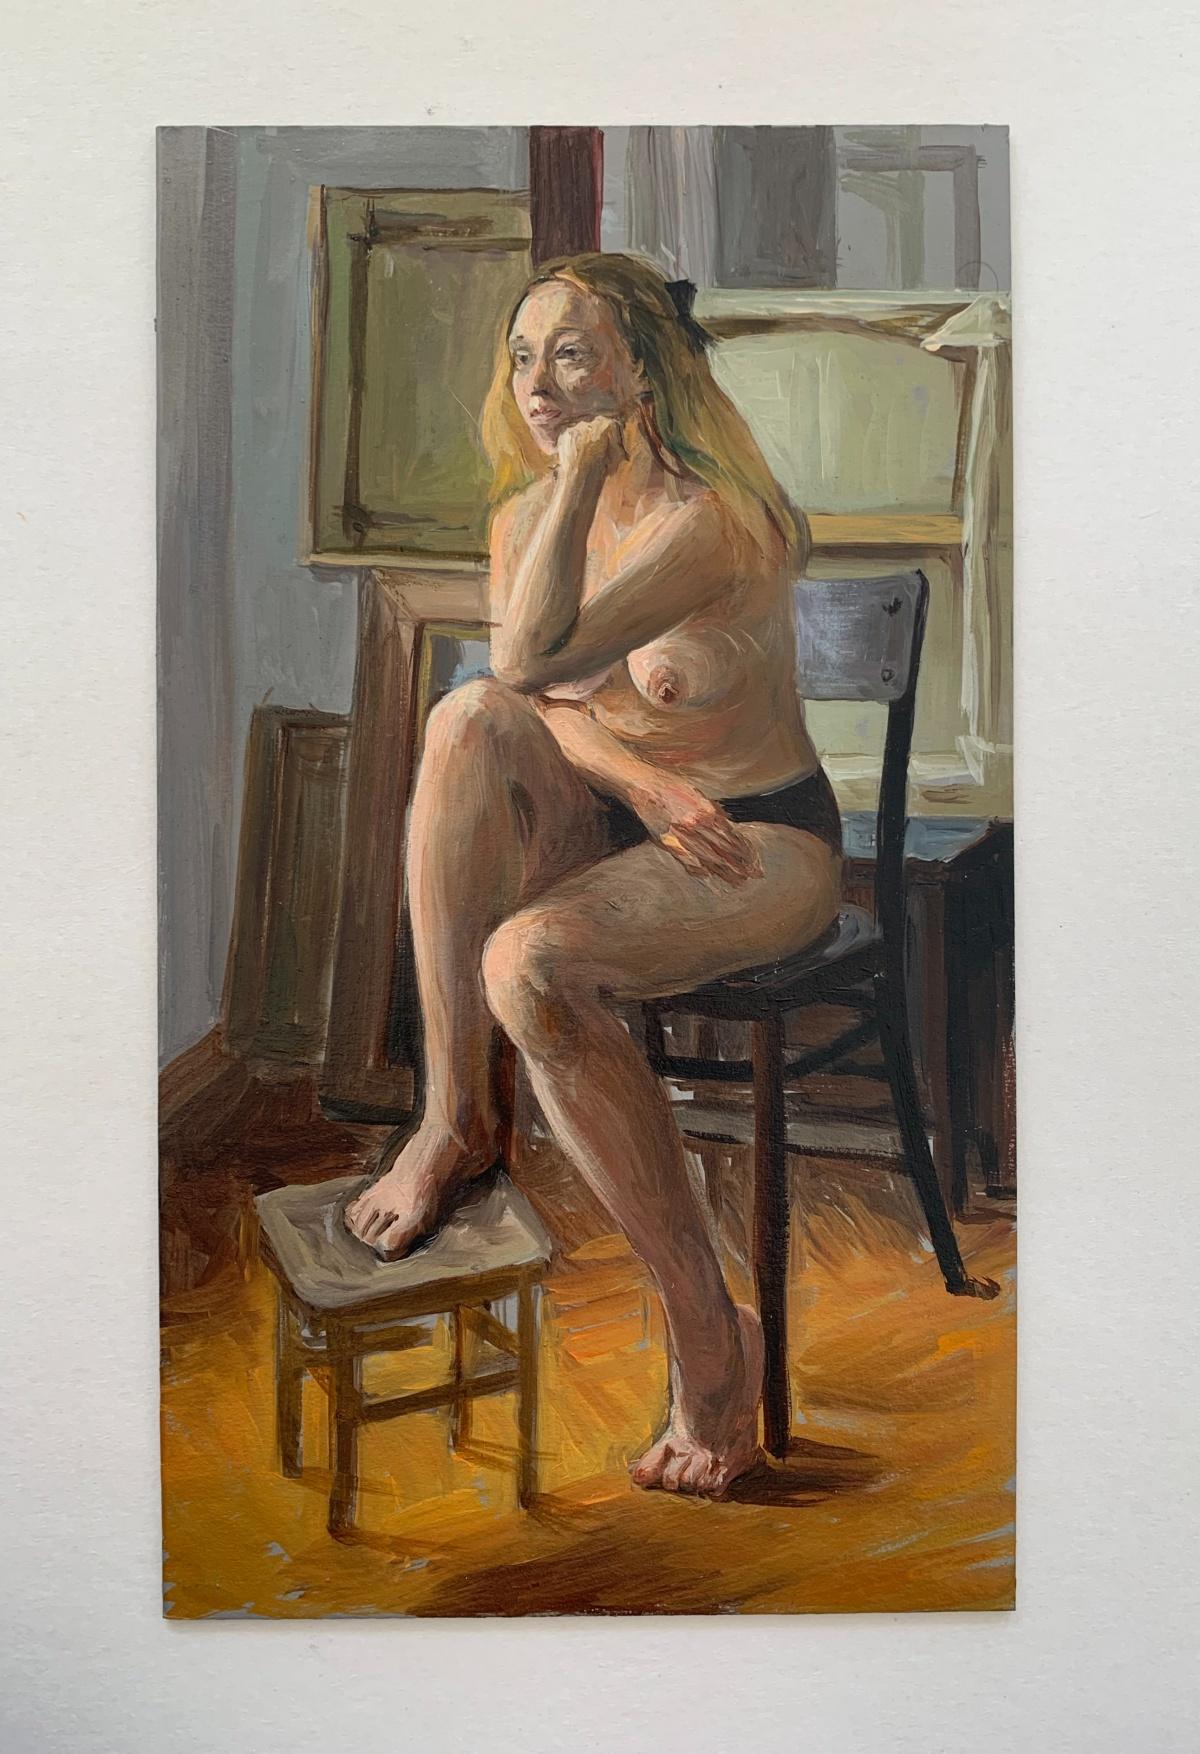 Peinture à l'huile réaliste représentant une femme nue, tons chauds, jeune artiste polonaise - Painting de Agnieszka Staak-Janczarska